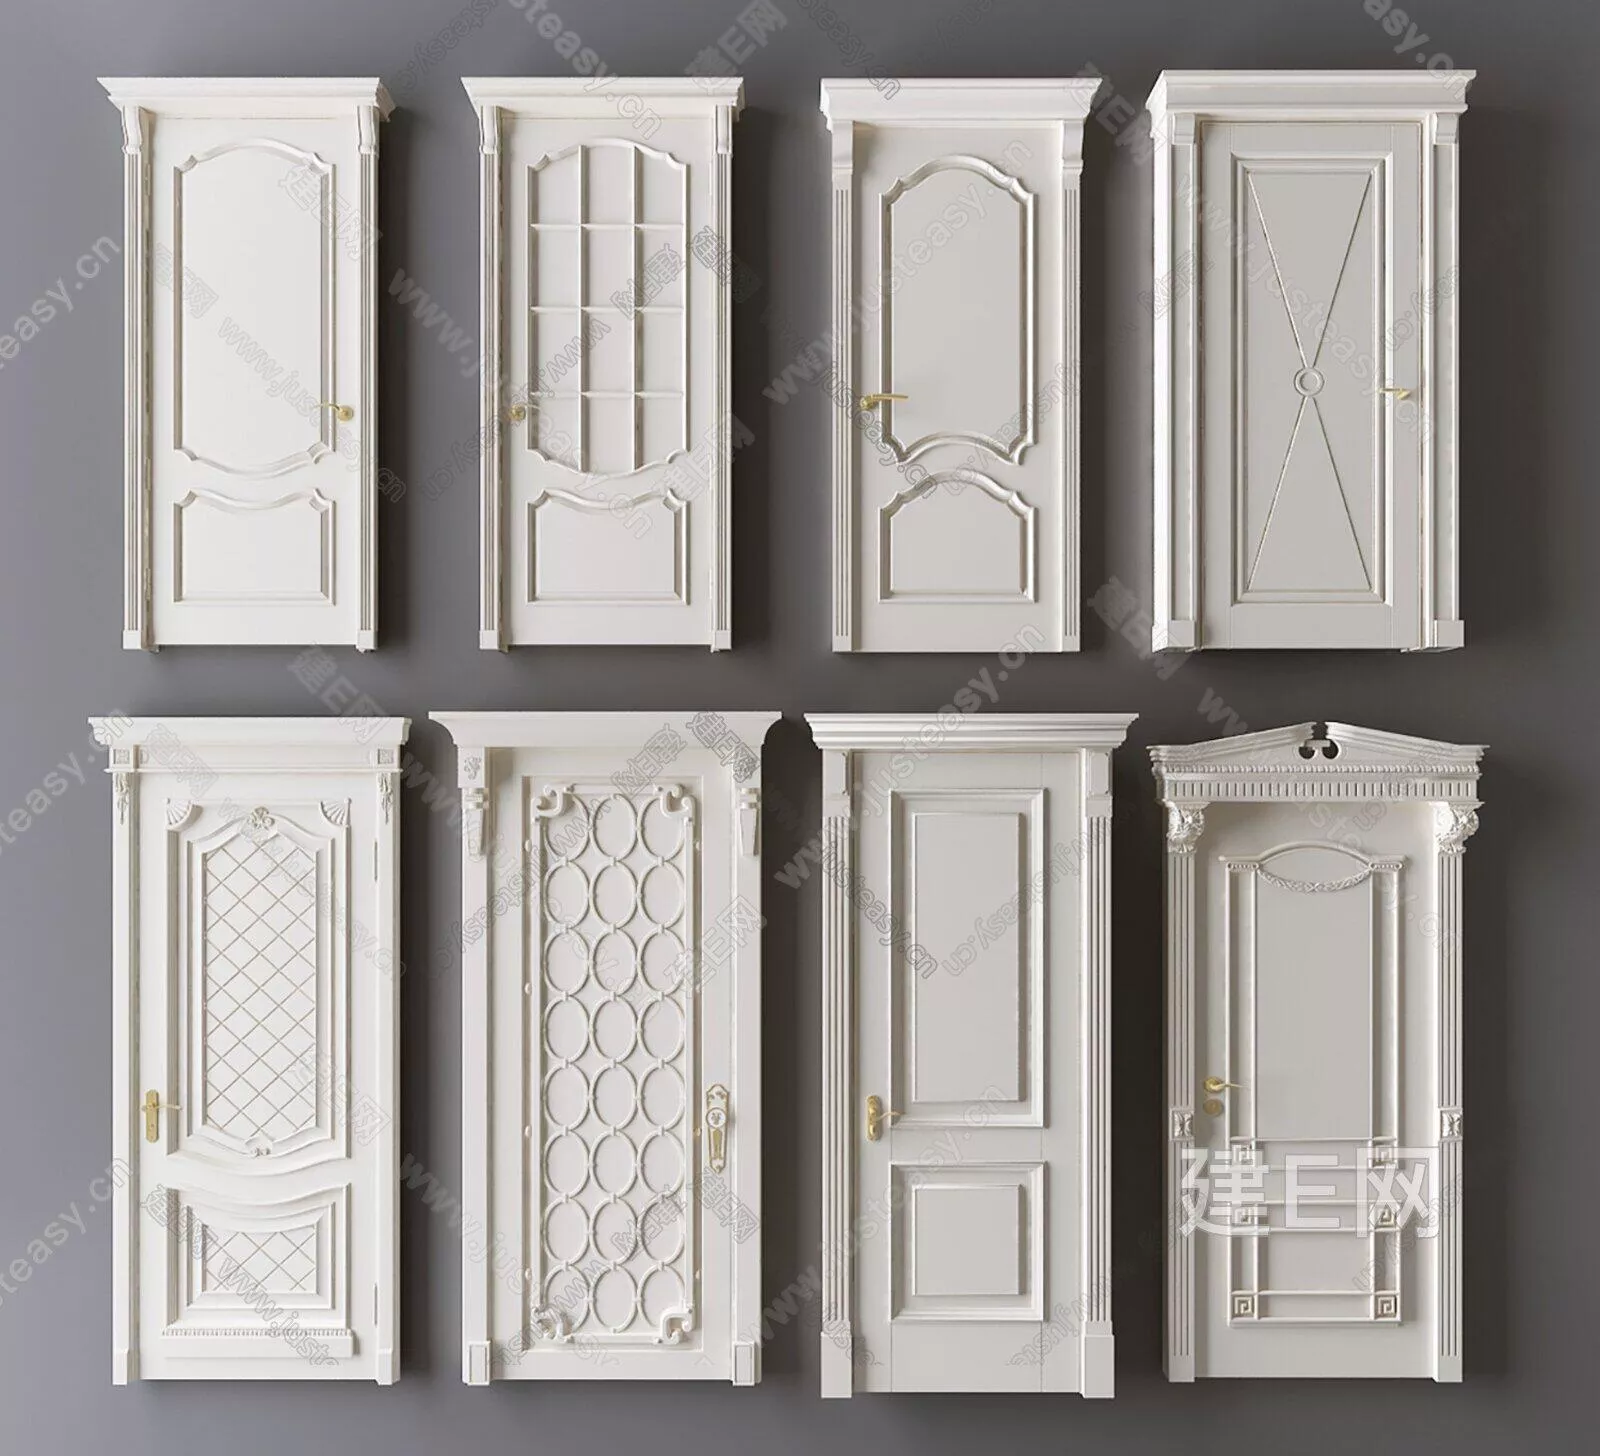 EUROPE DOOR AND WINDOWS - SKETCHUP 3D MODEL - ENSCAPE - 111562097